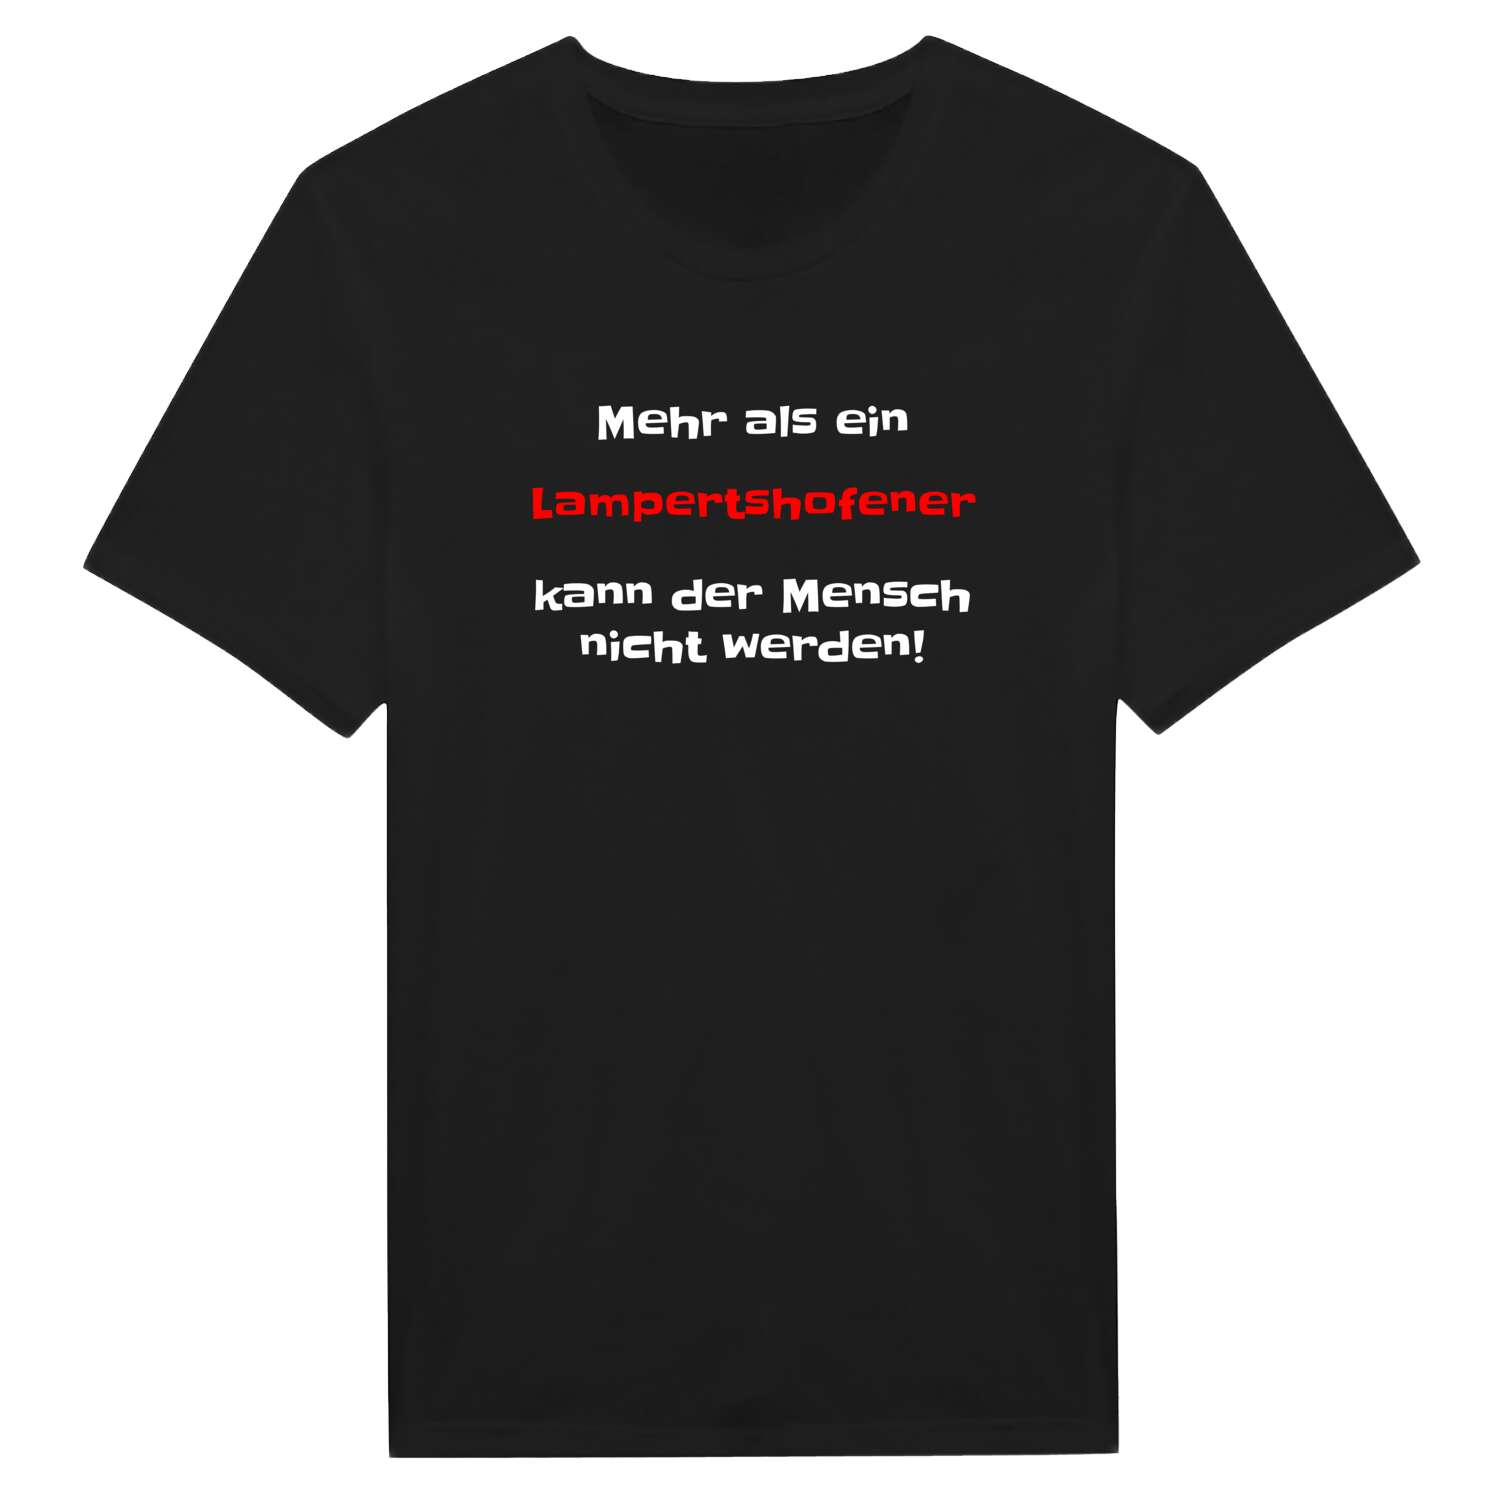 Lampertshofen T-Shirt »Mehr als ein«